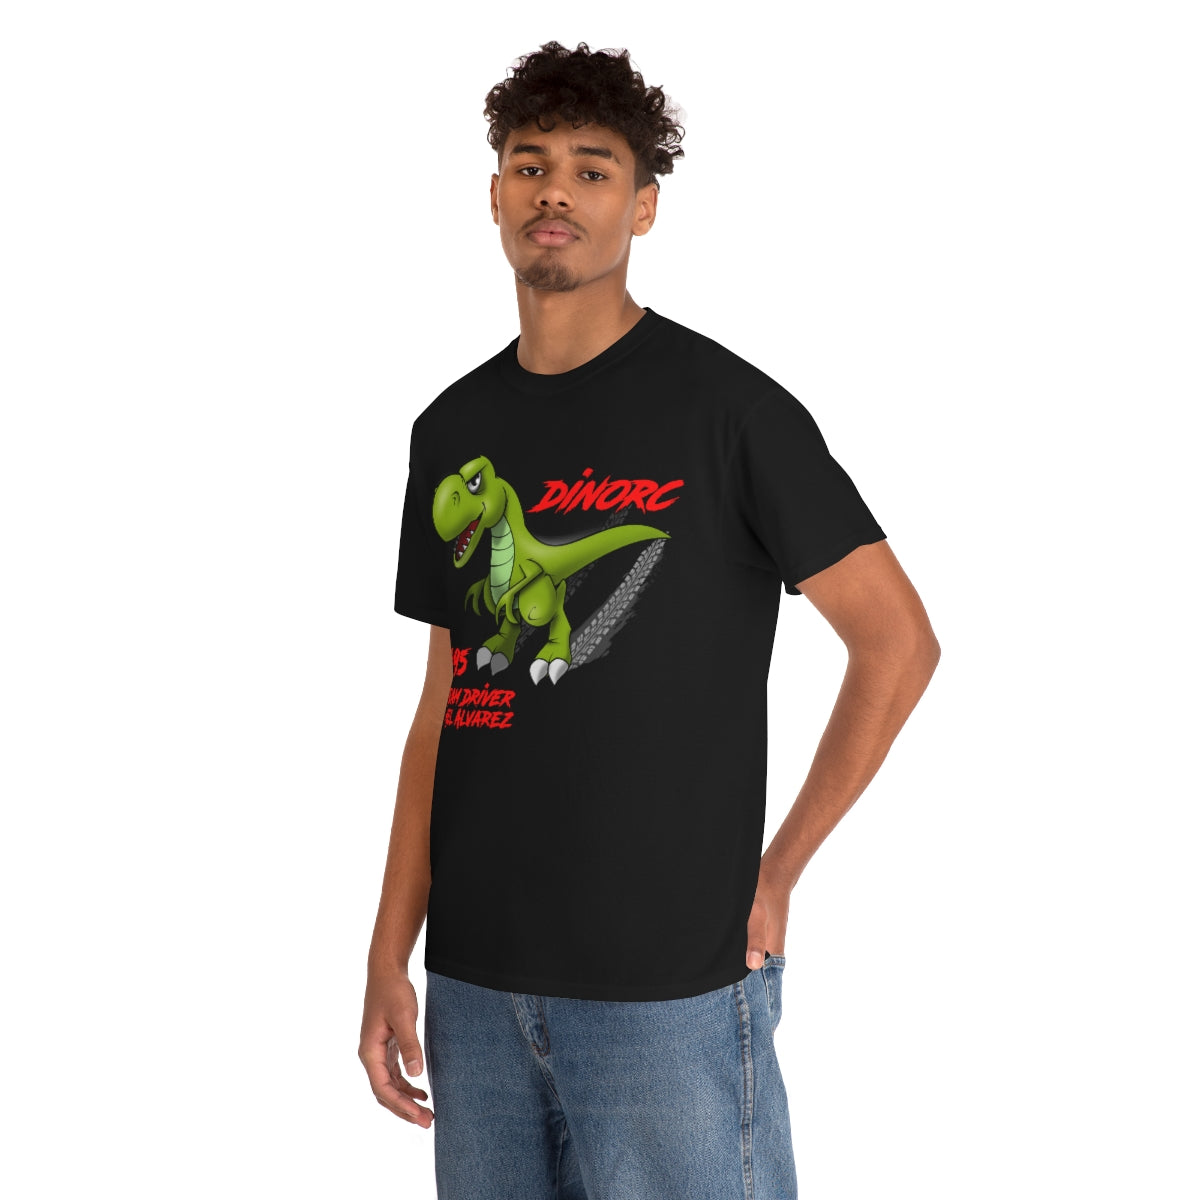 Team Driver Mel Alvarez  DinoRc Logo T-Shirt S-5x